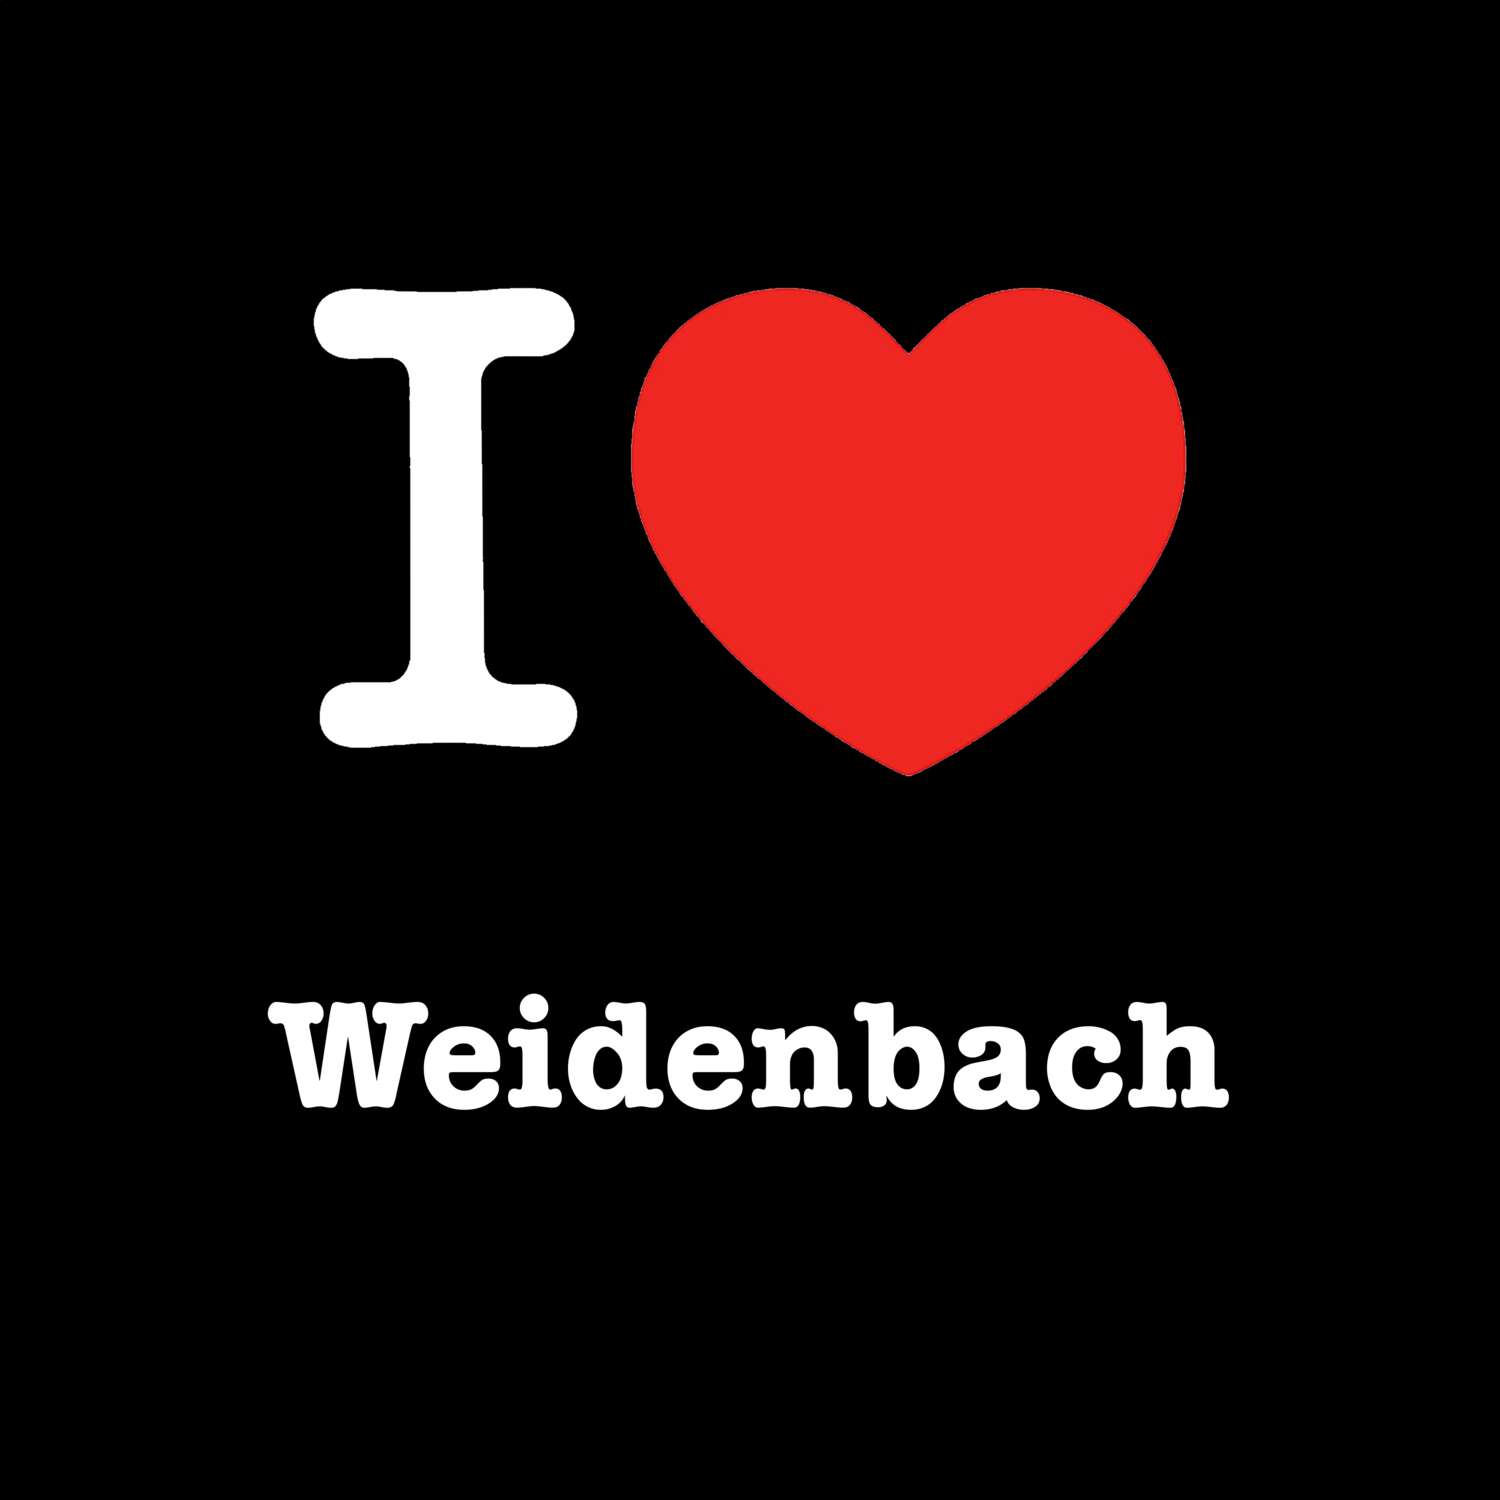 Weidenbach T-Shirt »I love«